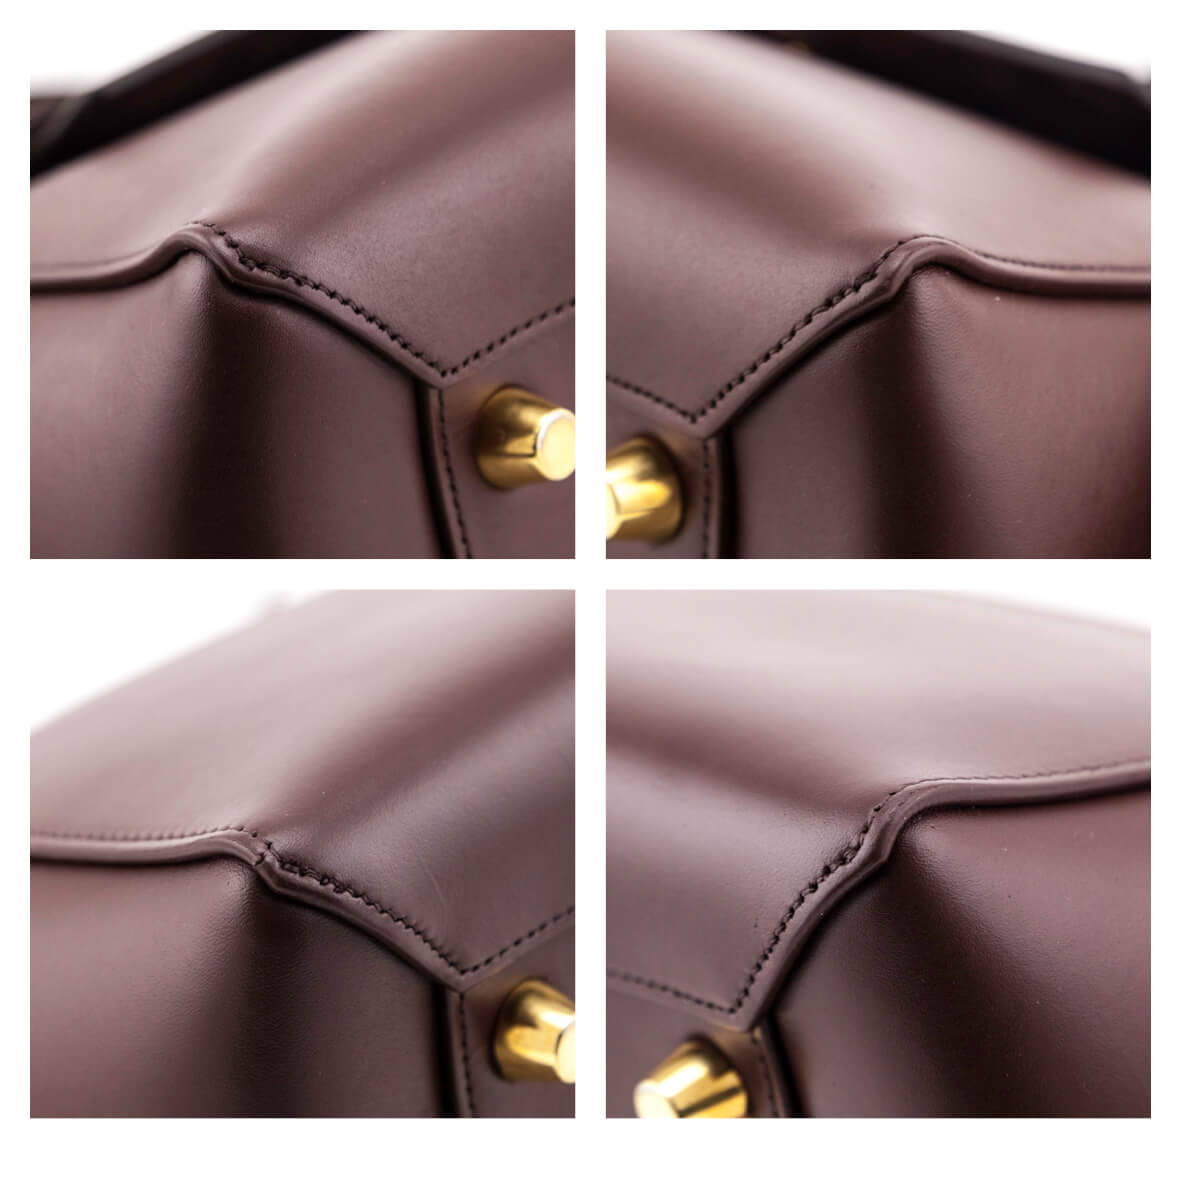 CELINE Belt Bag / Burgundy Smooth and Grained Leather Mini Belt Bag